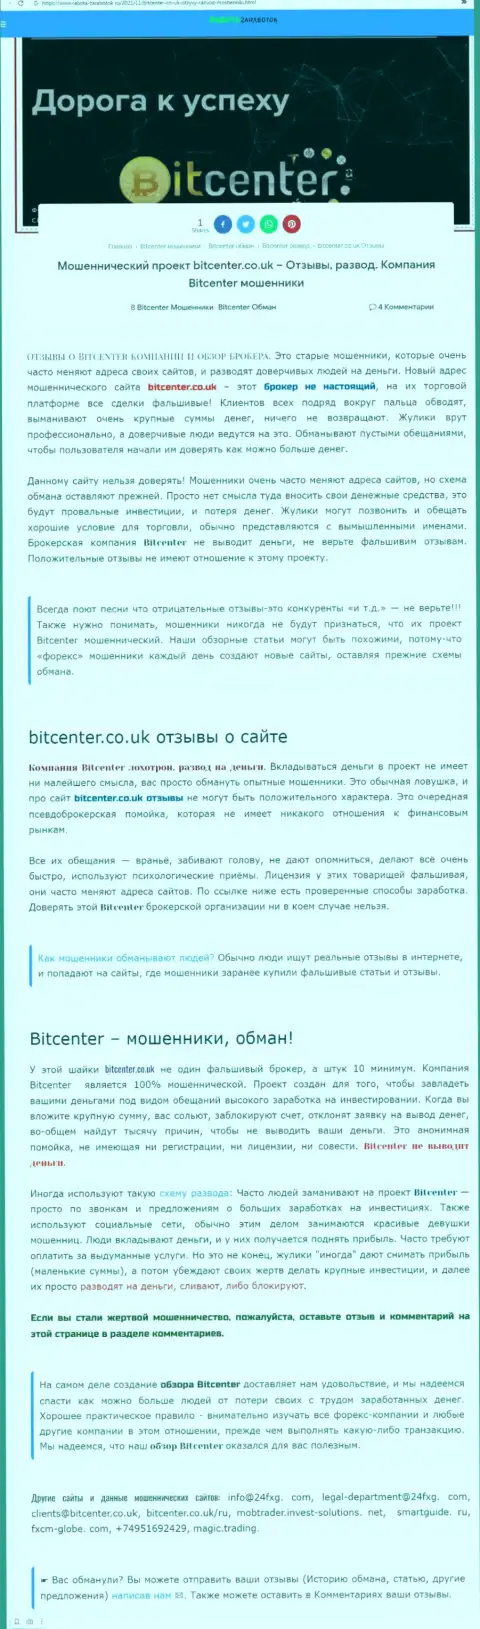 Bit Center - это организация, работа с которой доставляет лишь потери (обзор)